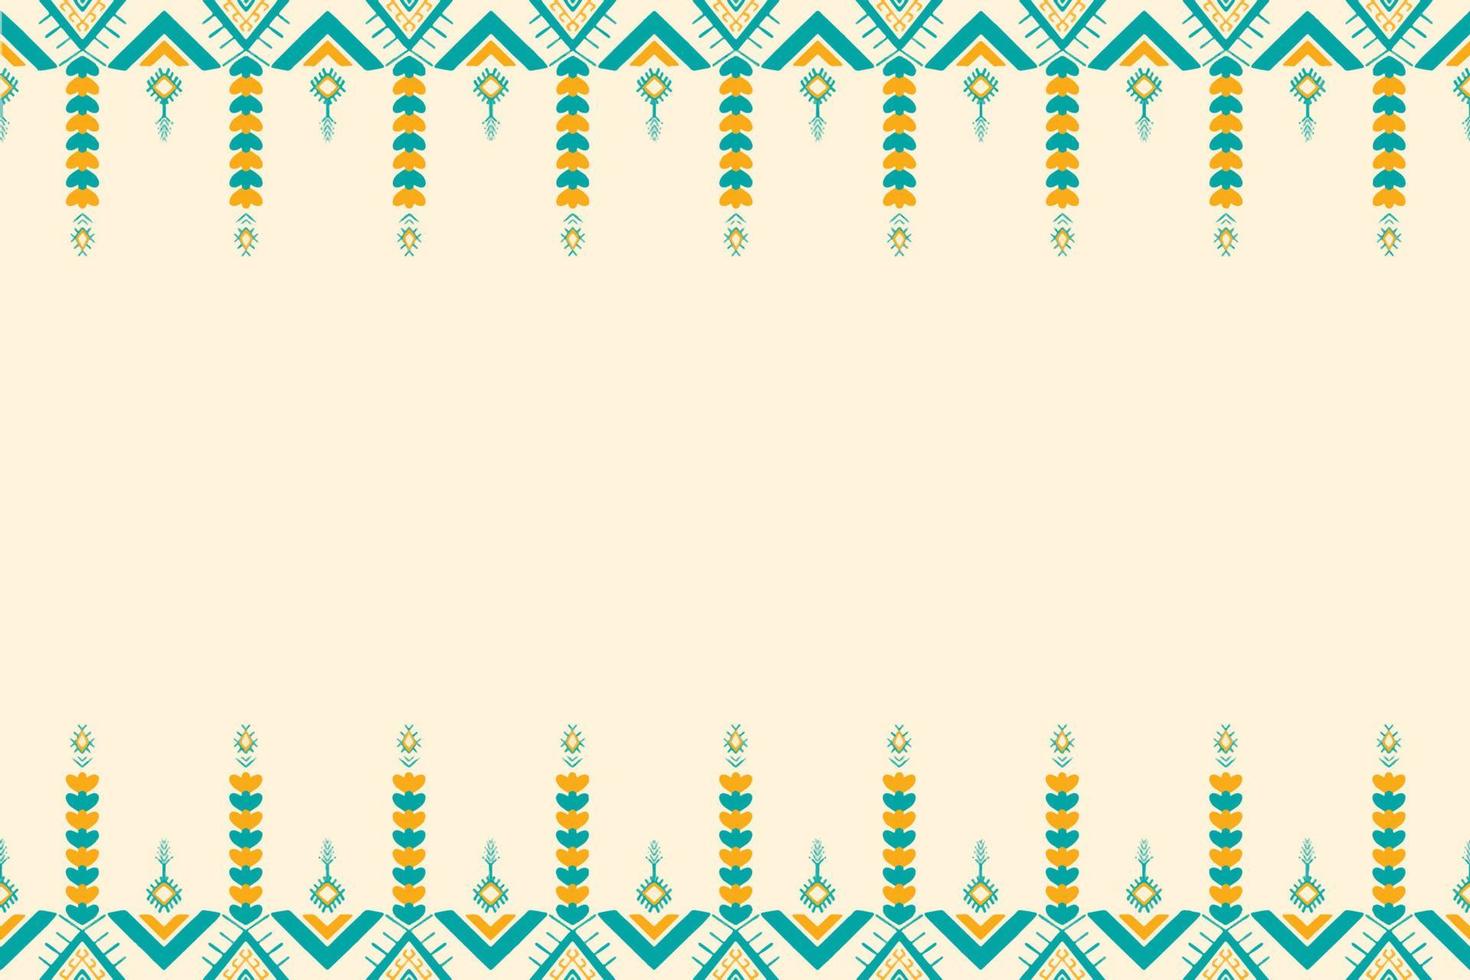 gul och grön kricka på elfenben. geometriskt etniskt orientaliskt mönster traditionell design för bakgrund, matta, tapeter, kläder, omslag, batik, tyg, vektorillustration broderistil vektor